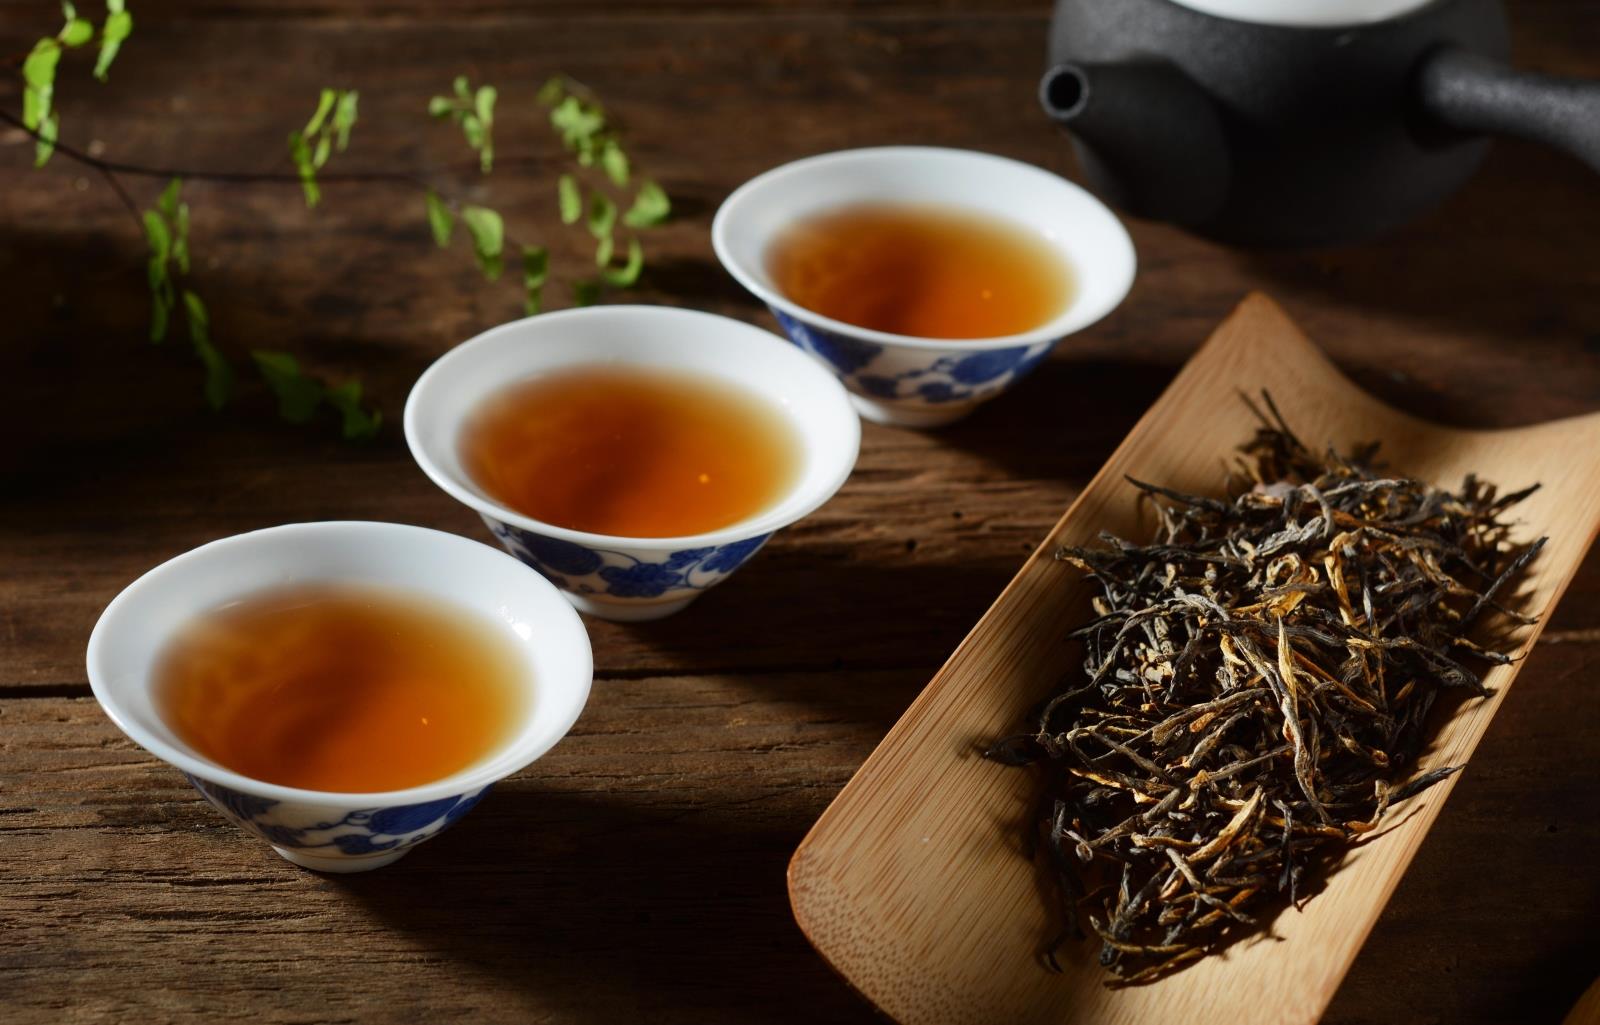 全面了解流金岁月茶叶的价格、品质与选购指南，让你轻松成为茶叶专家